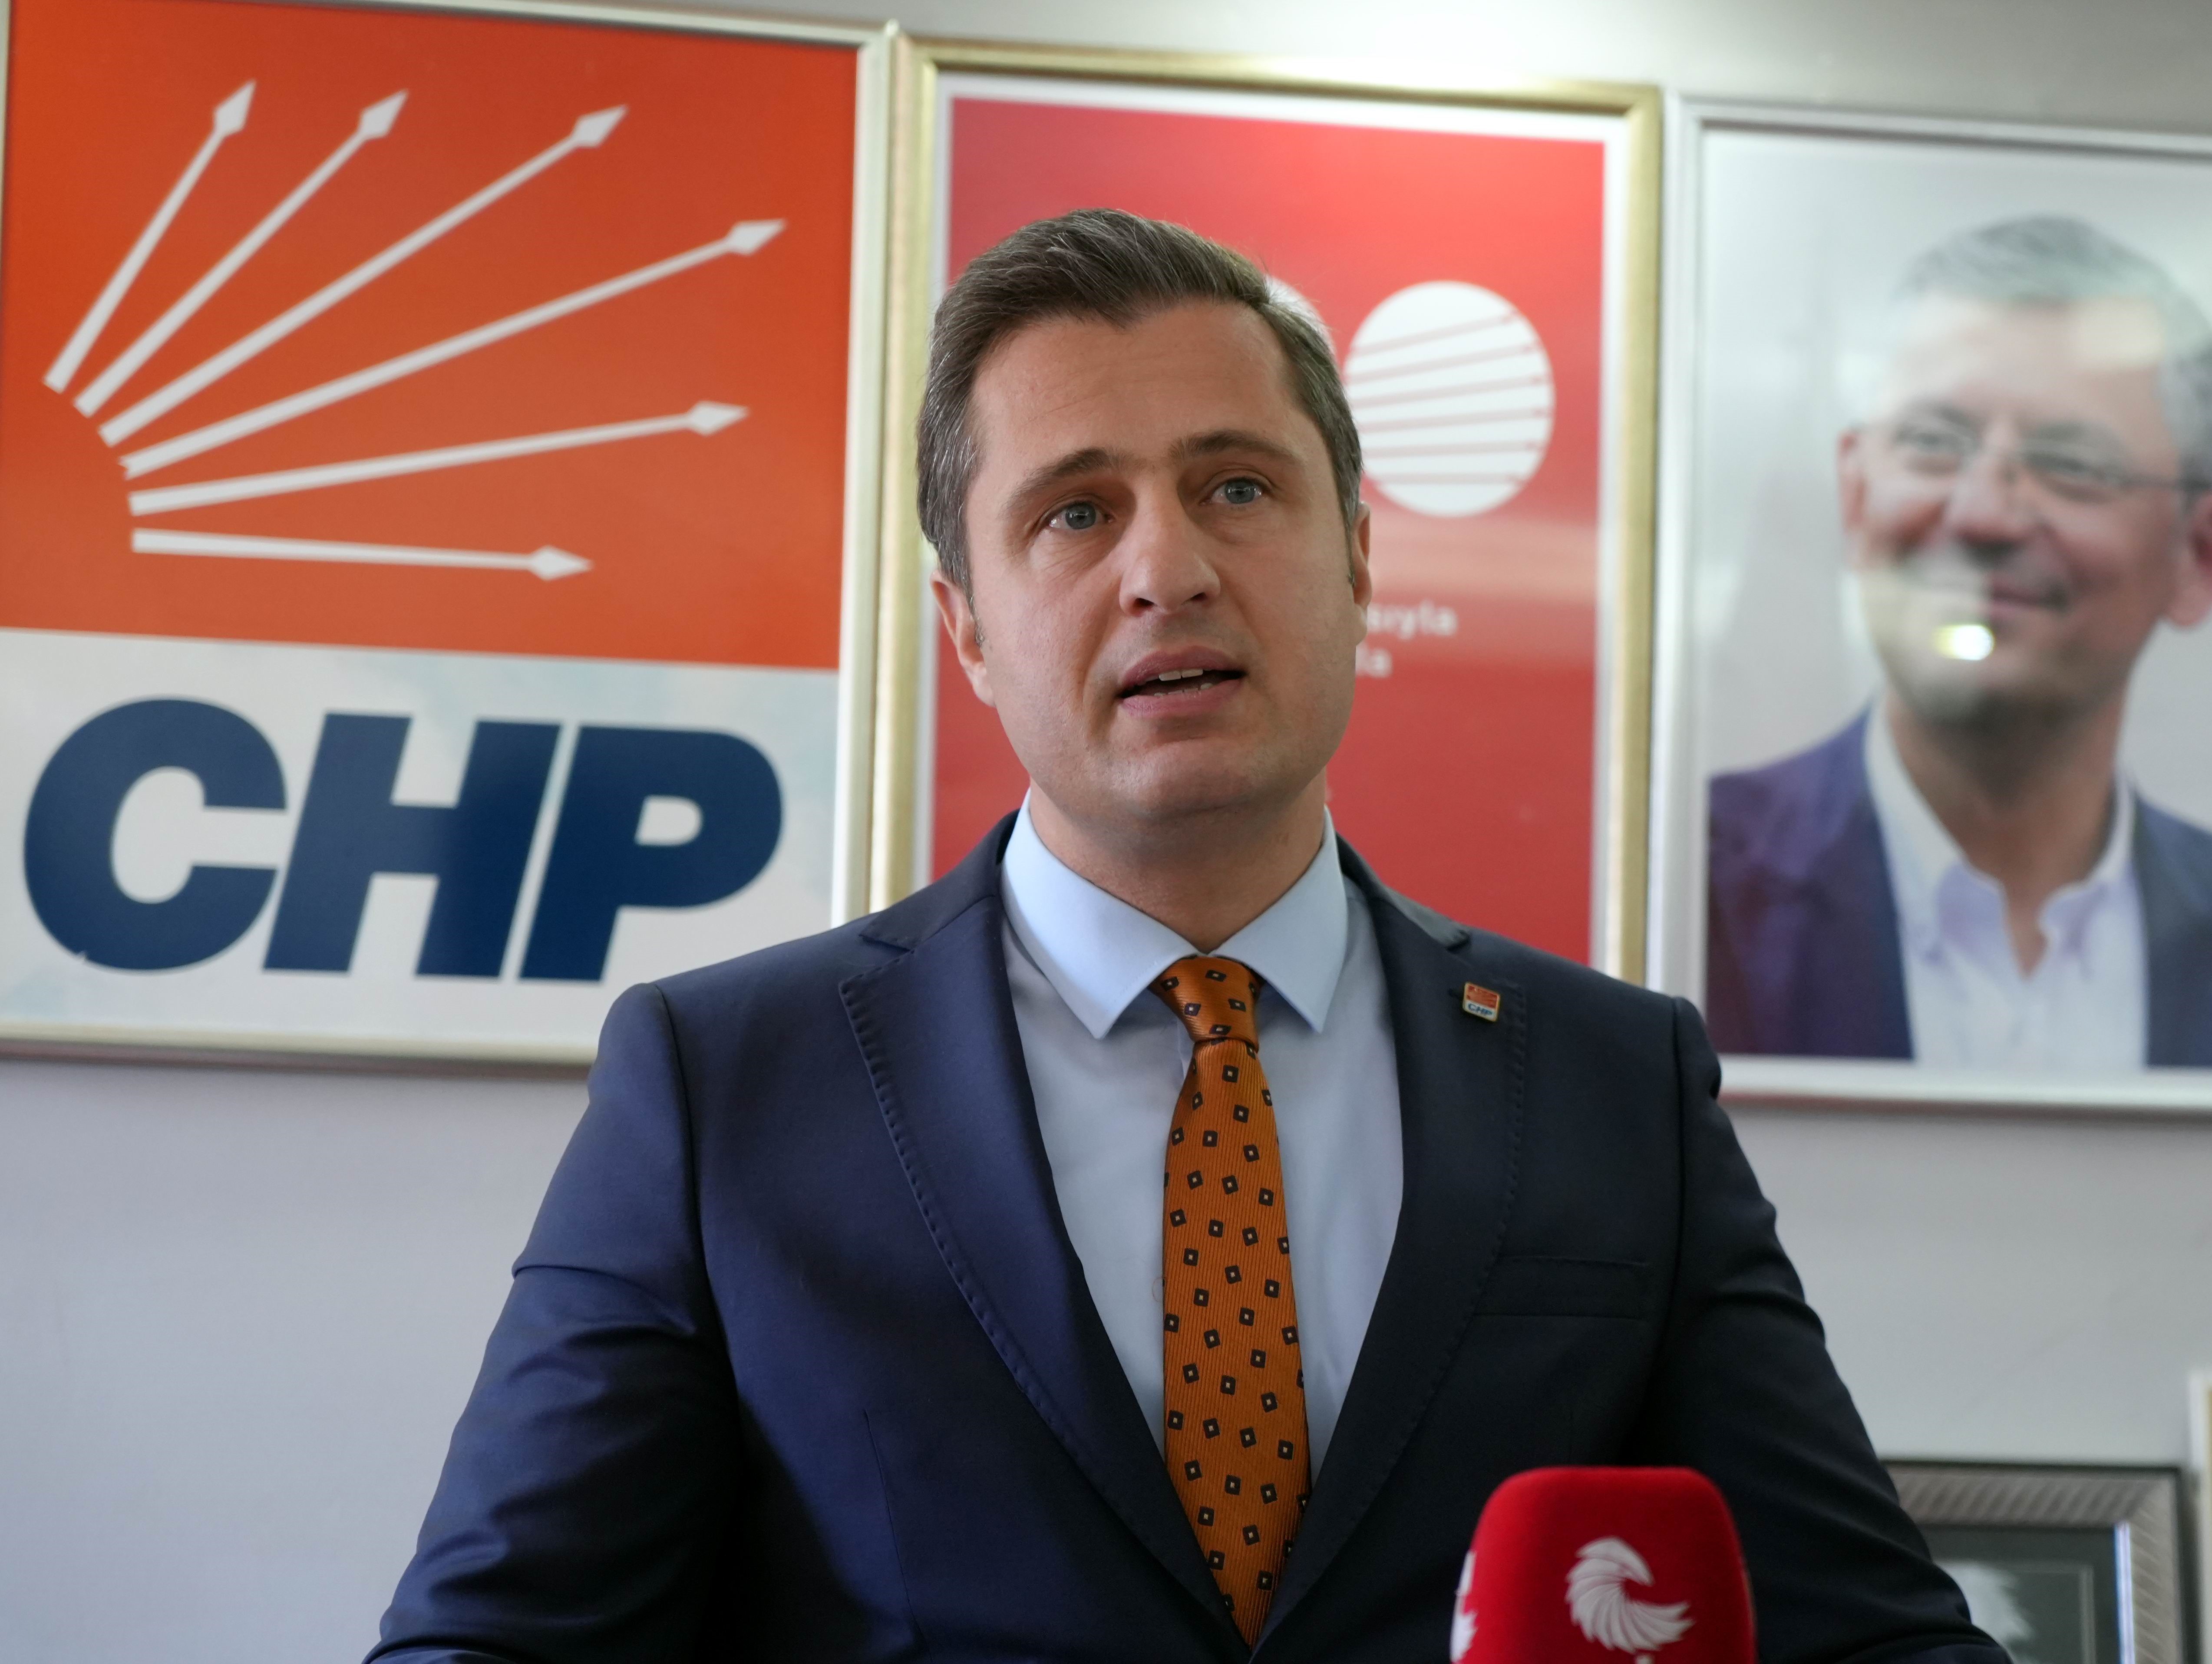 CHP Parti Sözcüsü Yücel: “Kamuda israfı sona erdirecek her türlü tedbir alınmalıdır”